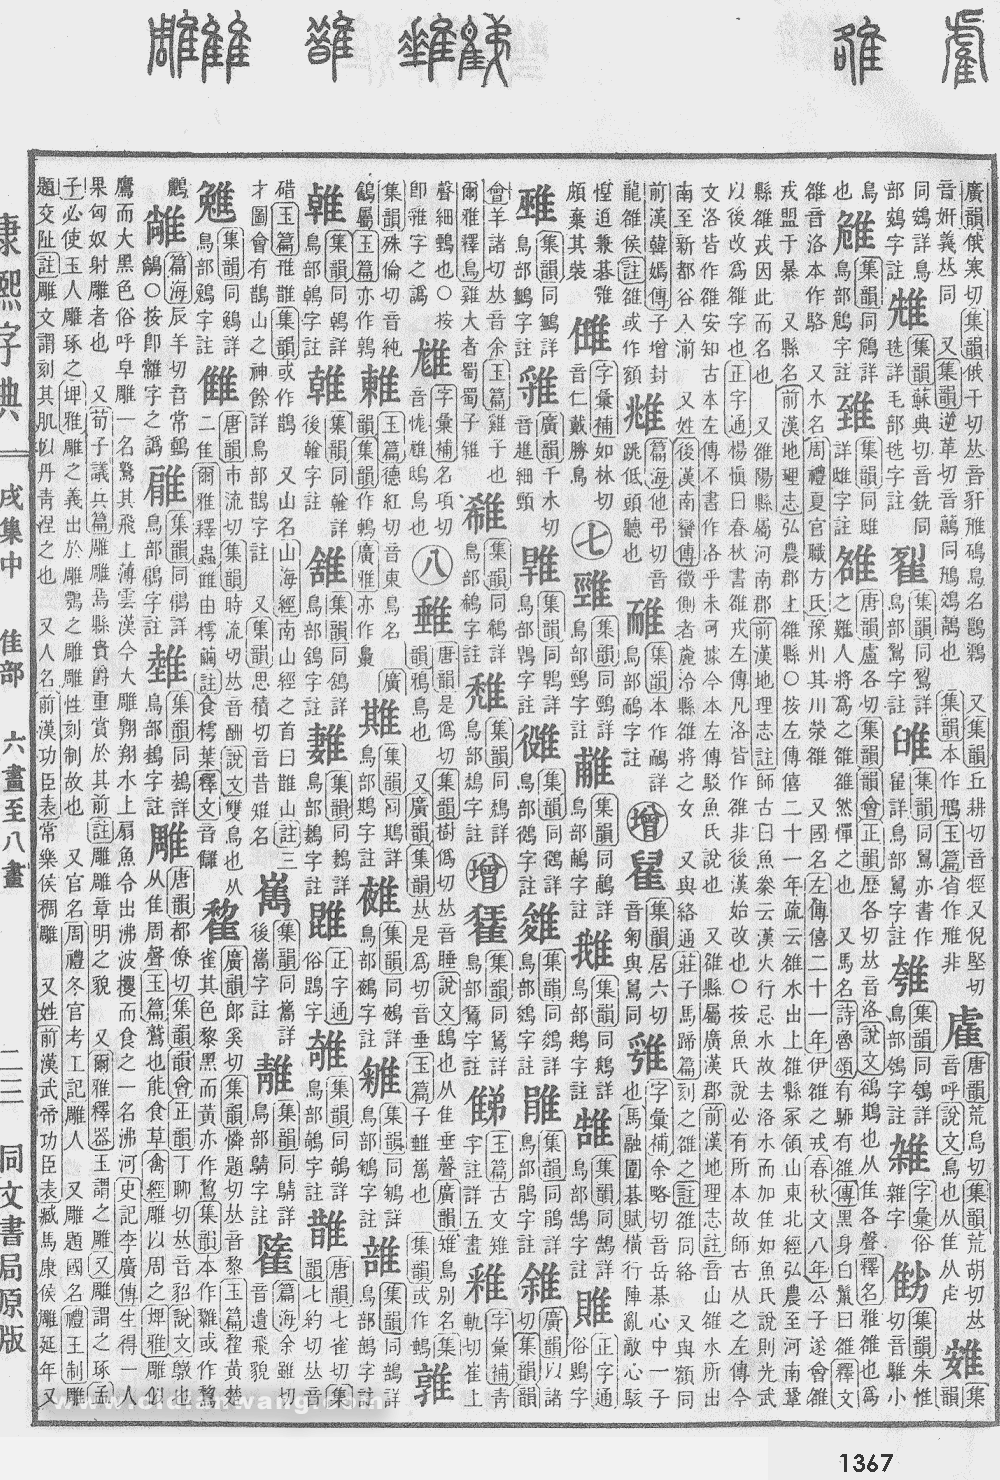 康熙字典掃描版第1367頁